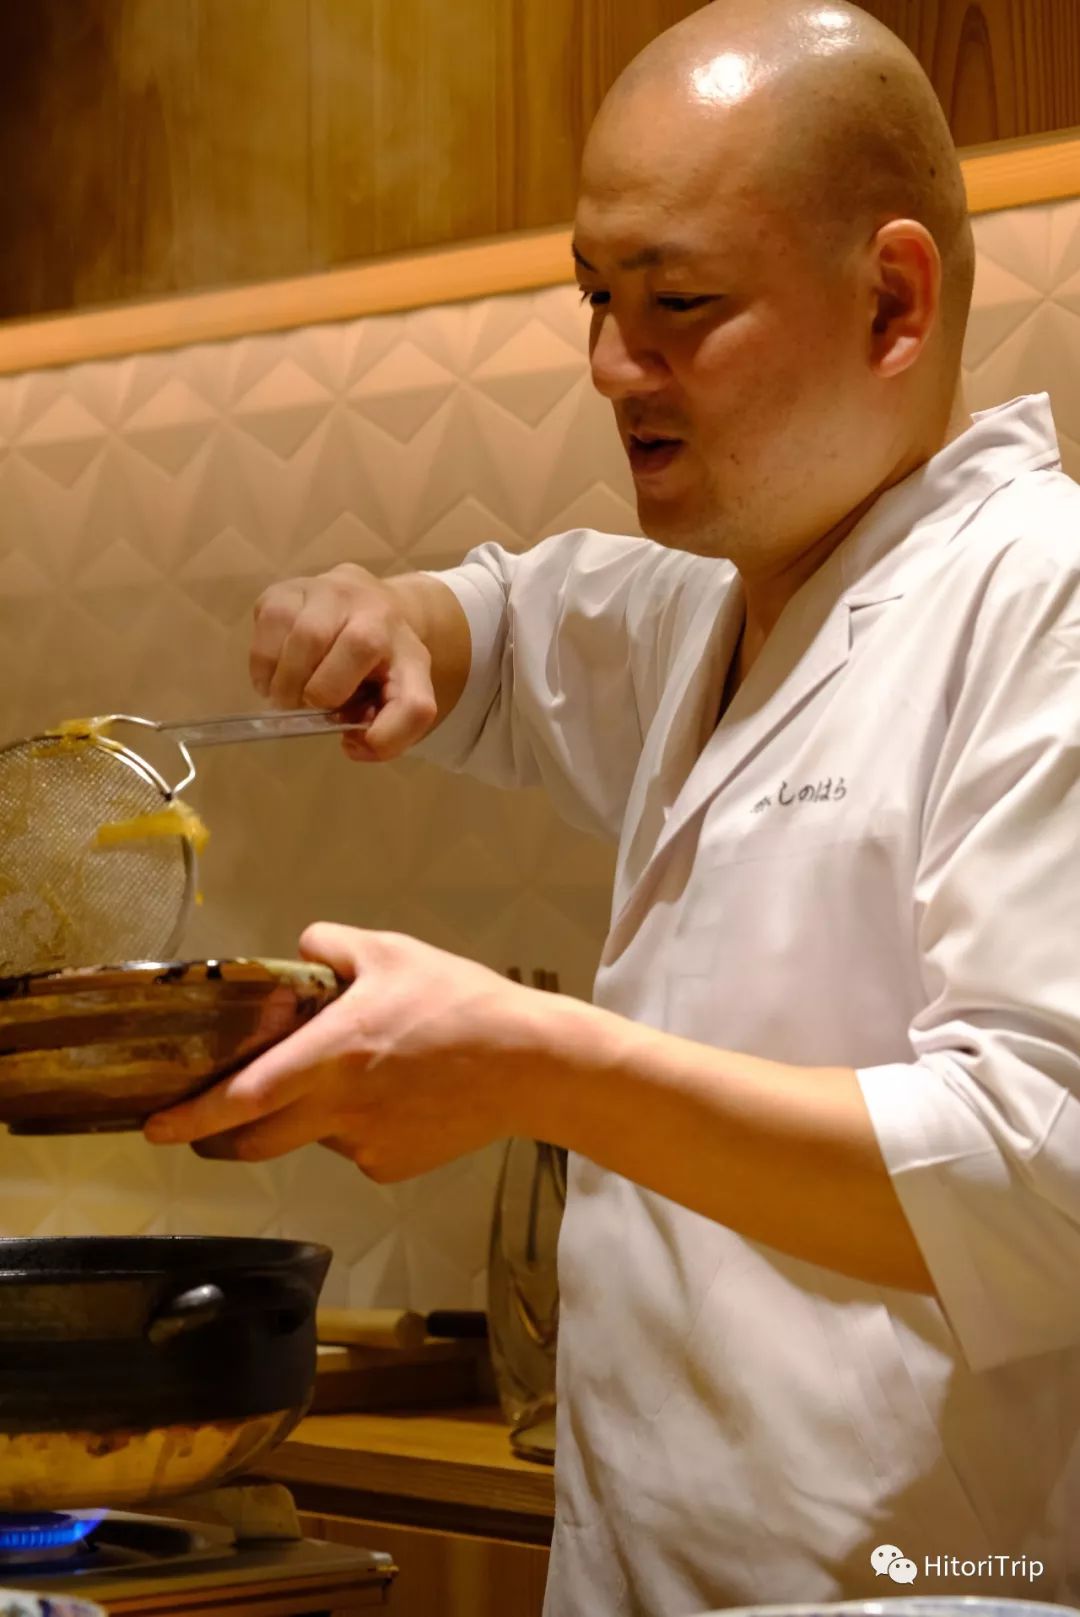 用鹅肝演绎甜蜜瞬间 他仍是最尖端的日本料理人 Hitoritrip 微信公众号文章阅读 Wemp